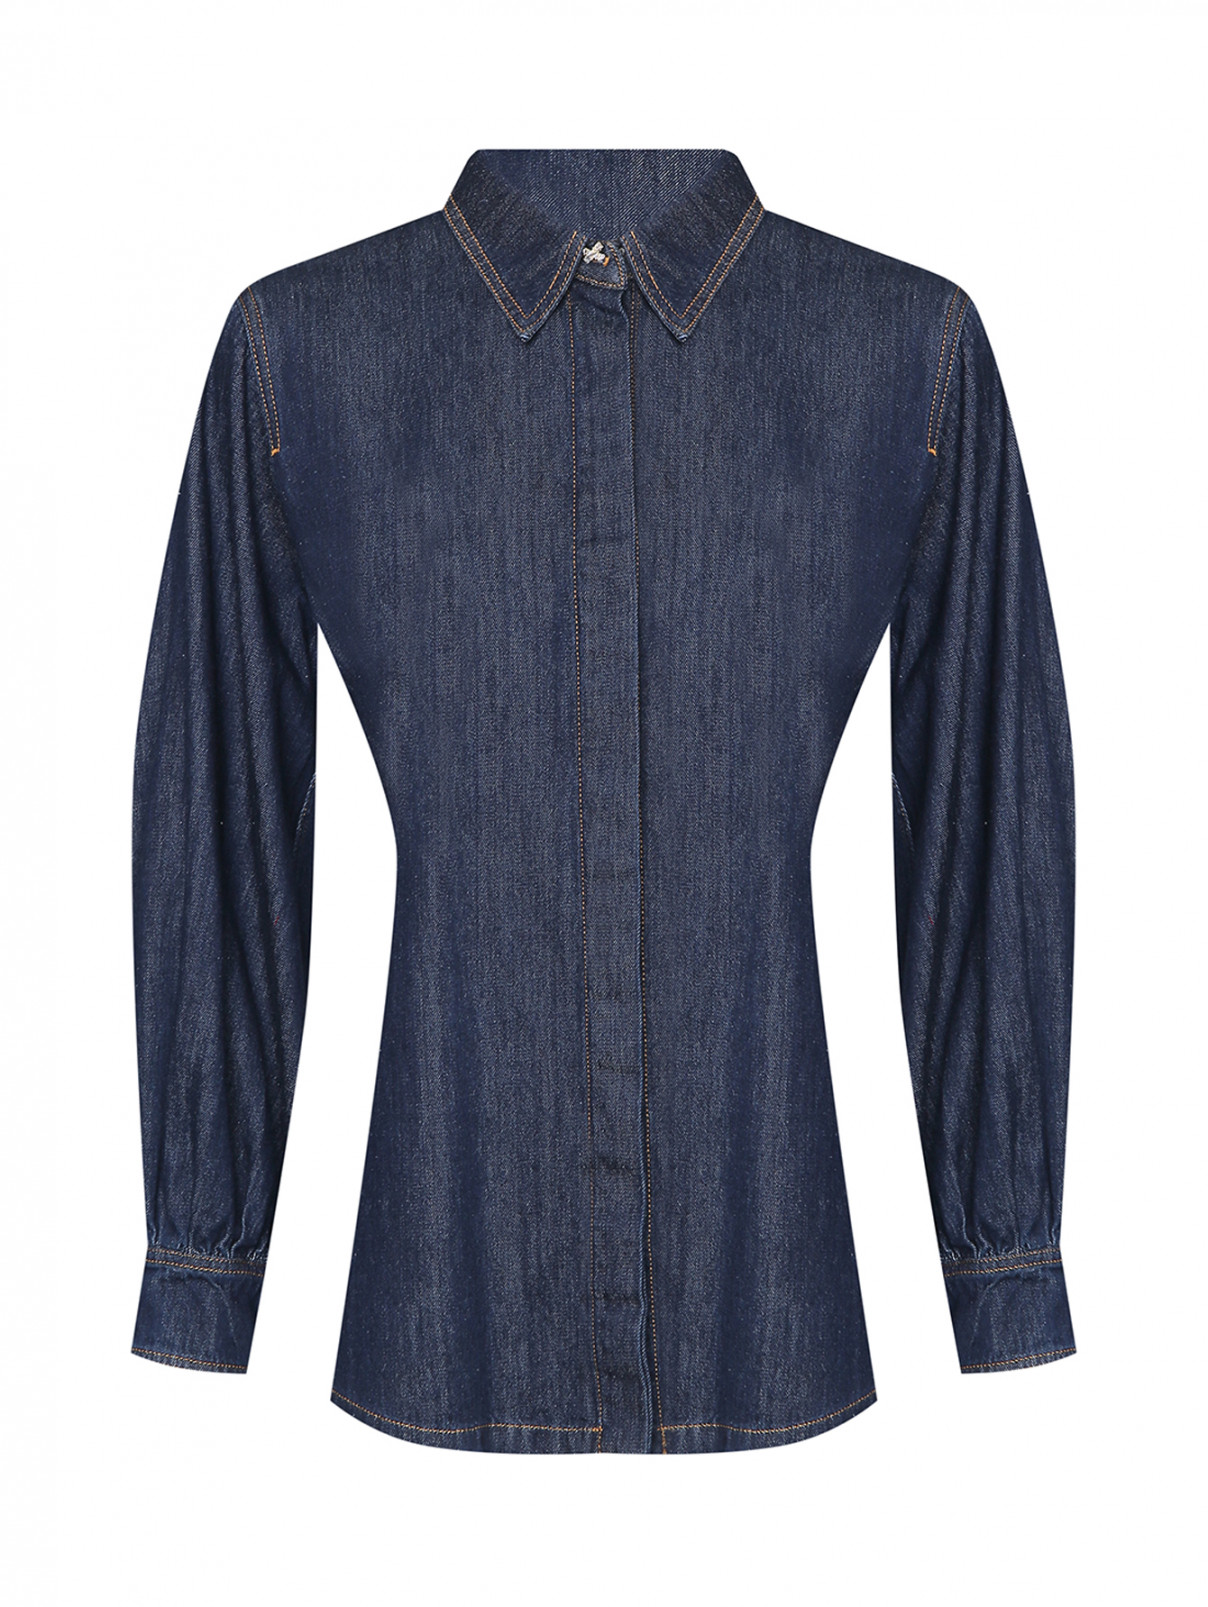 Джинсовая рубашка из хлопка Marina Rinaldi  –  Общий вид  – Цвет:  Синий